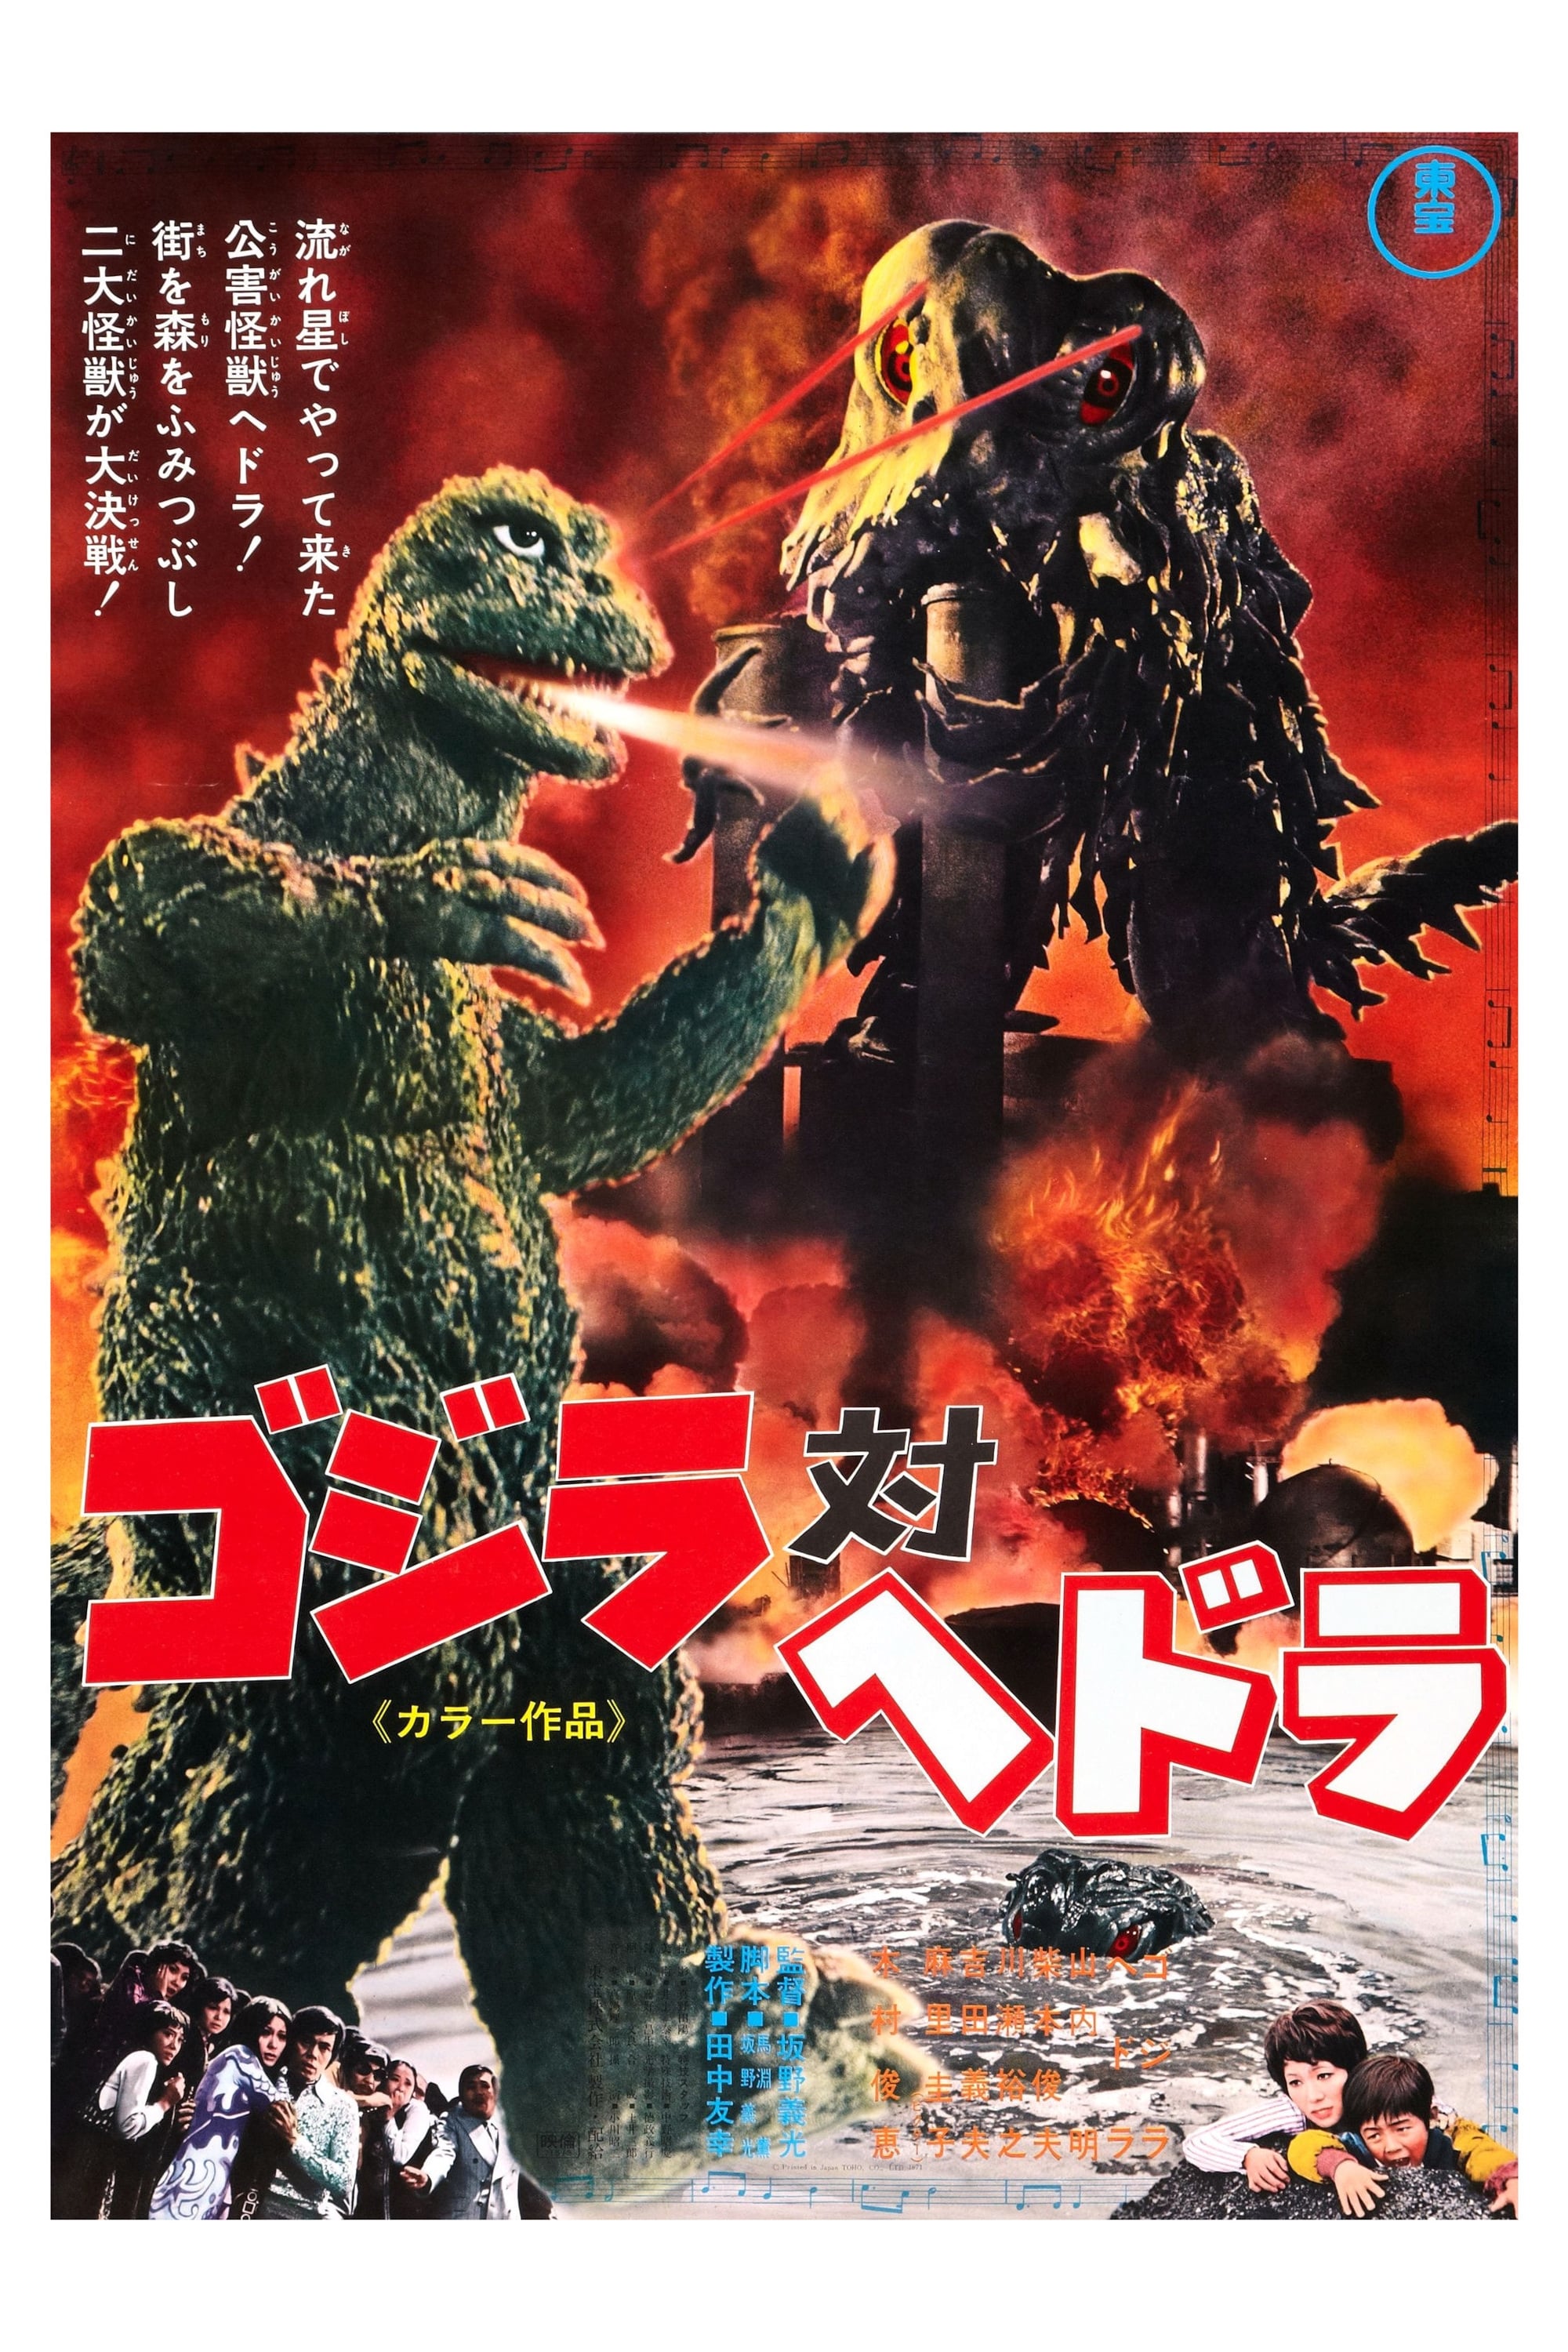 Godzilla Vs Hedorah